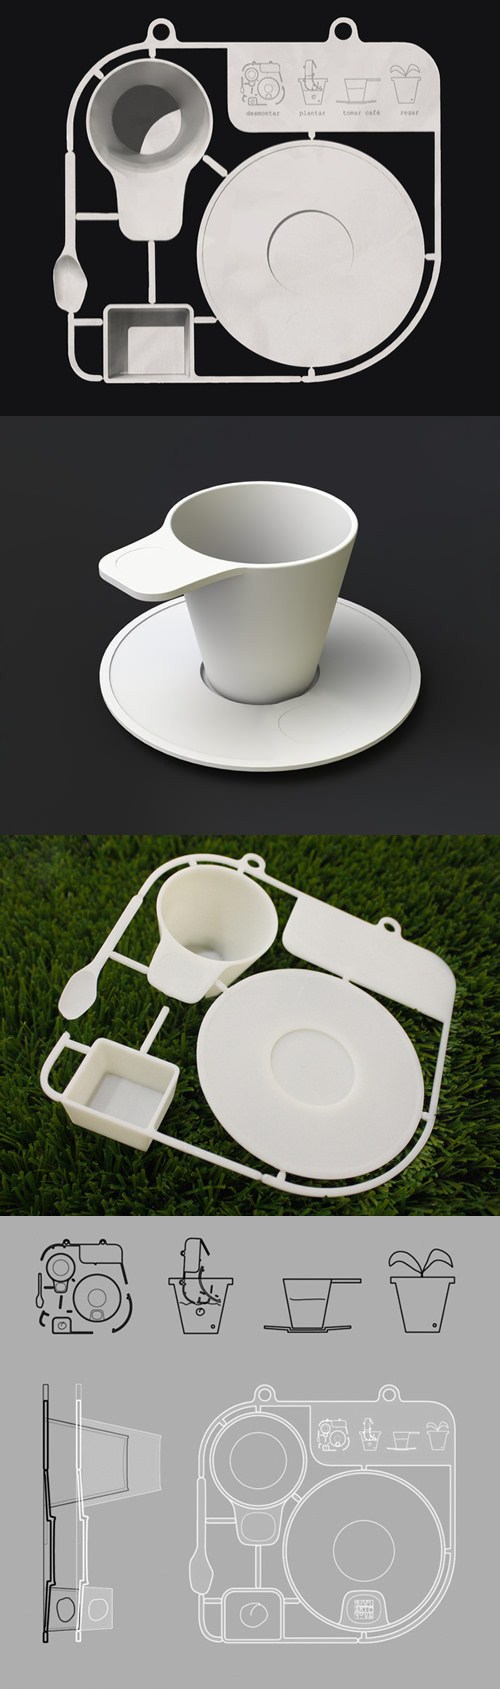 这是一套咖啡餐具，灵感来自拼装模型玩具。整套餐具包含了咖啡杯、碟和搅拌勺，一次注塑而成。使用就类似拼装模型玩具，拆下来就能使用，方便携带。另外十分环保，完全可以生物降解。 设计：Joana Carvalho